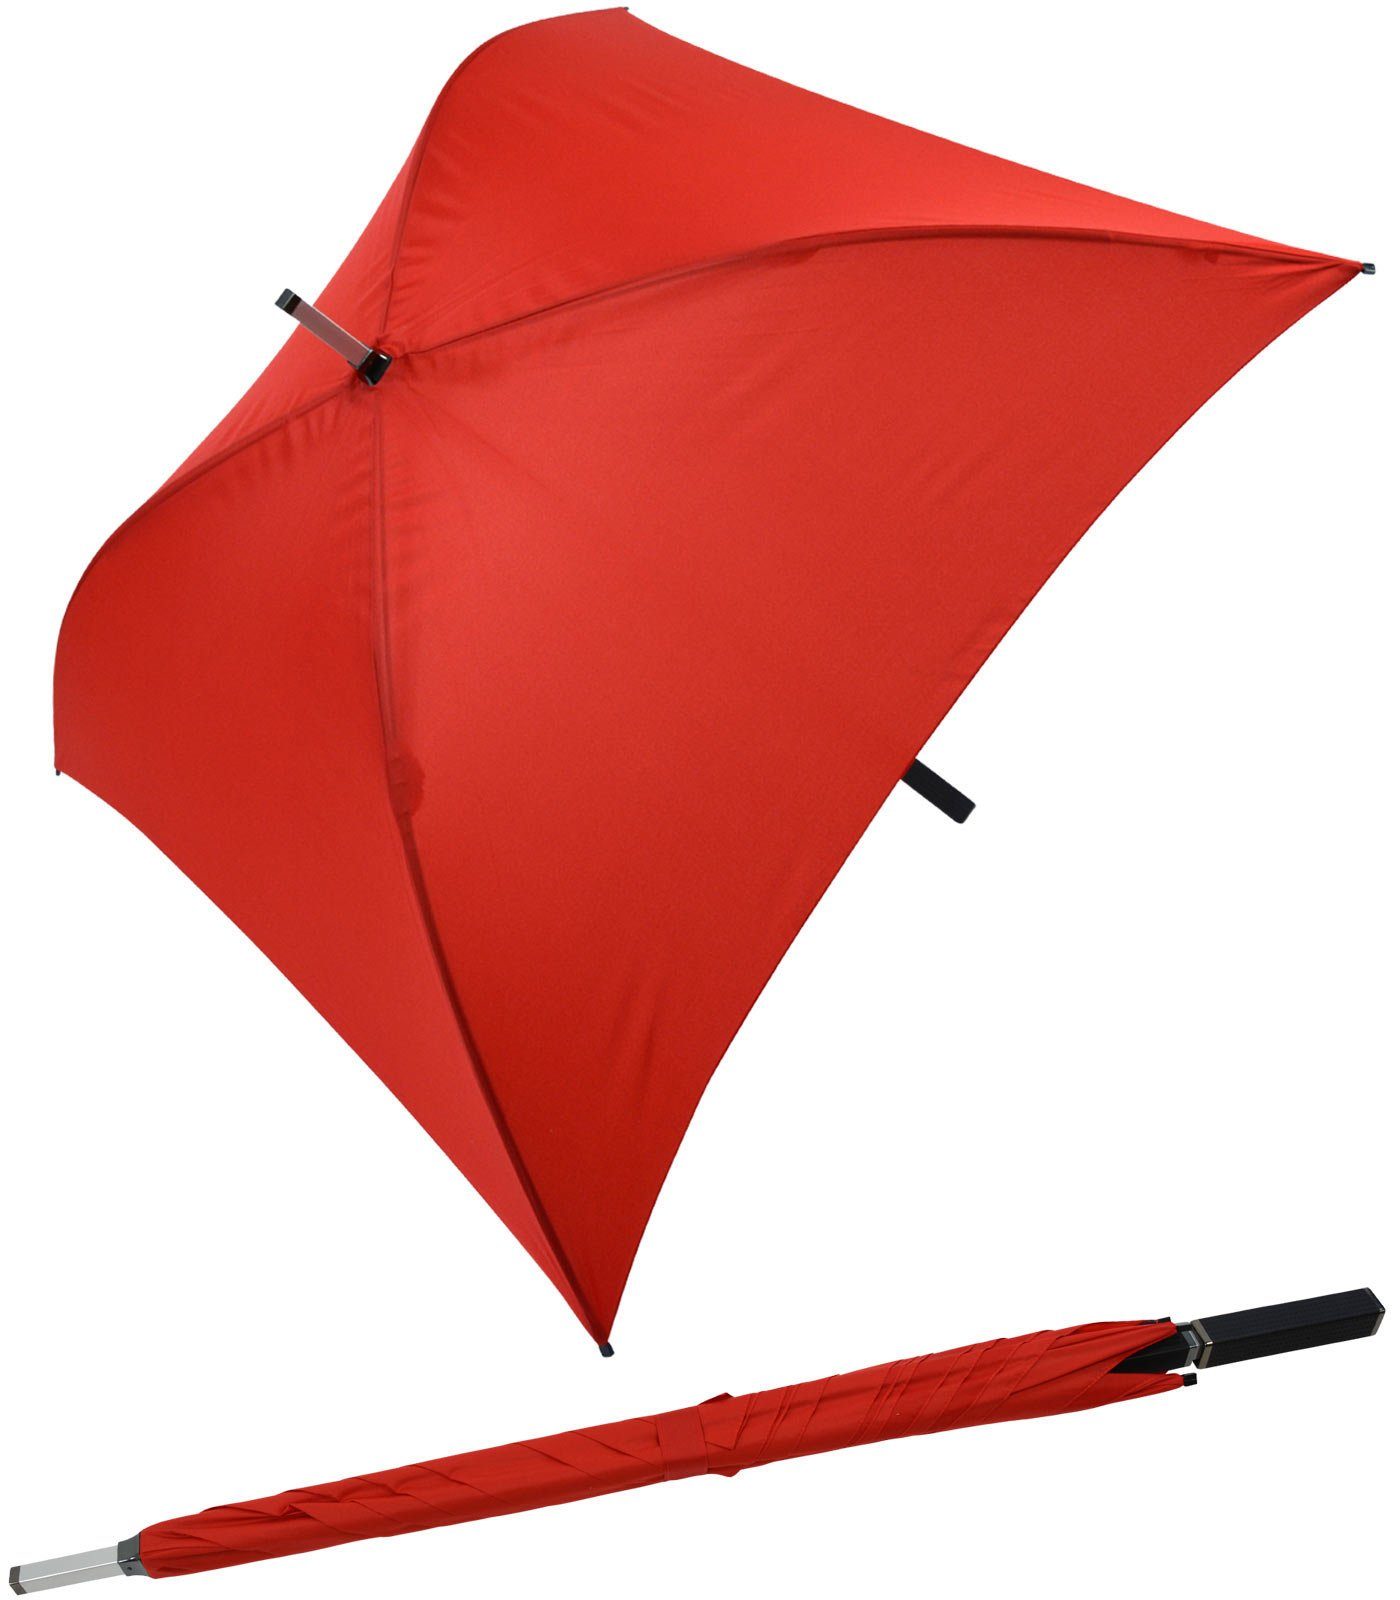 Impliva Langregenschirm All Square® voll quadratischer Regenschirm, der ganz besondere Regenschirm rot | Stockschirme